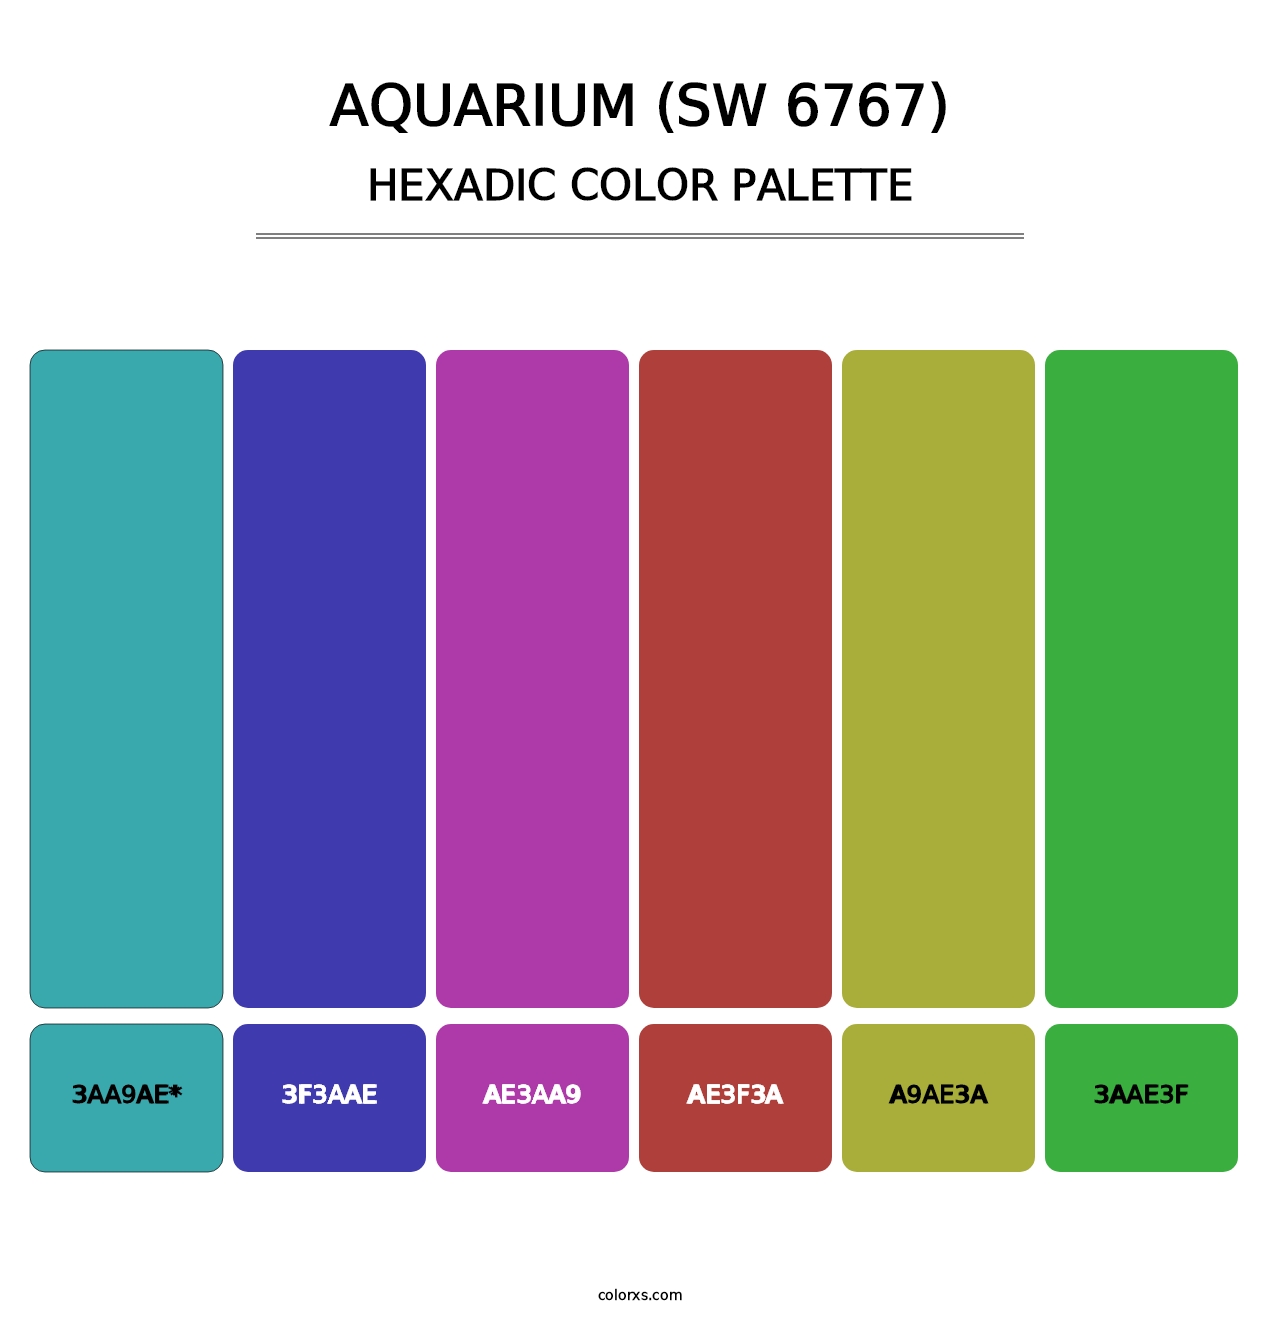 Aquarium (SW 6767) - Hexadic Color Palette